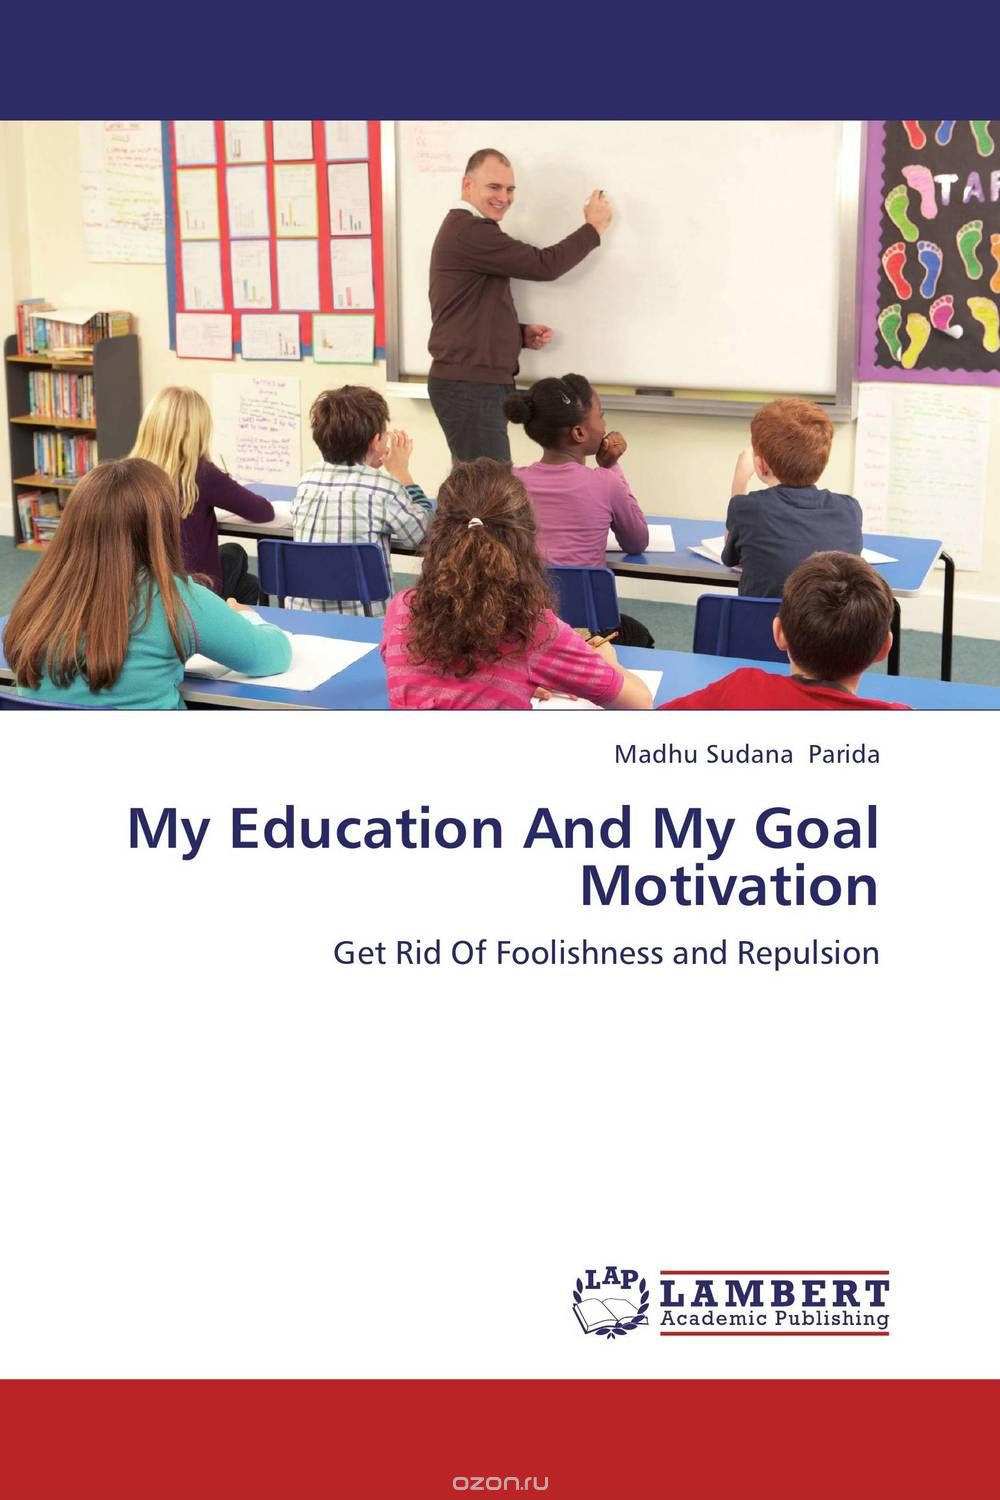 Скачать книгу "My Education And My Goal Motivation"